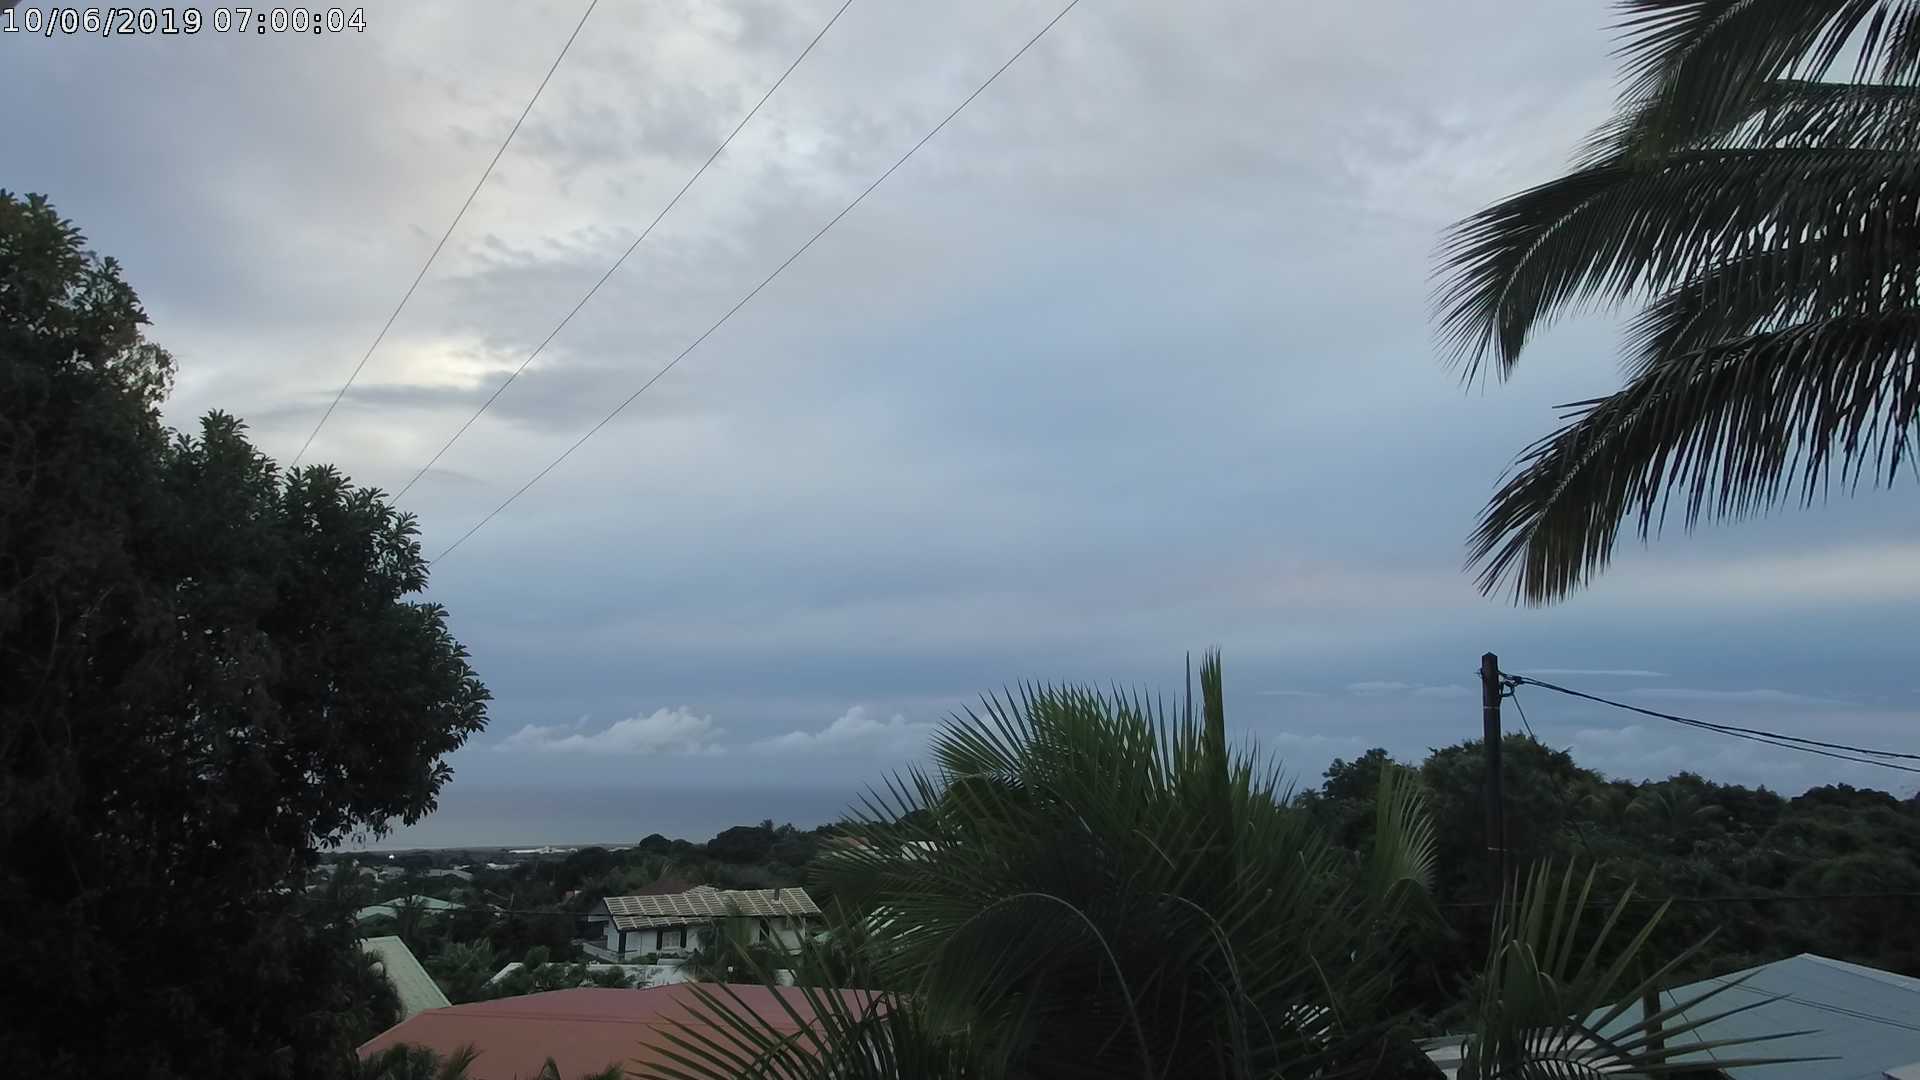 Ciel gris sur le nord de l'île. CYCLOTROPIC